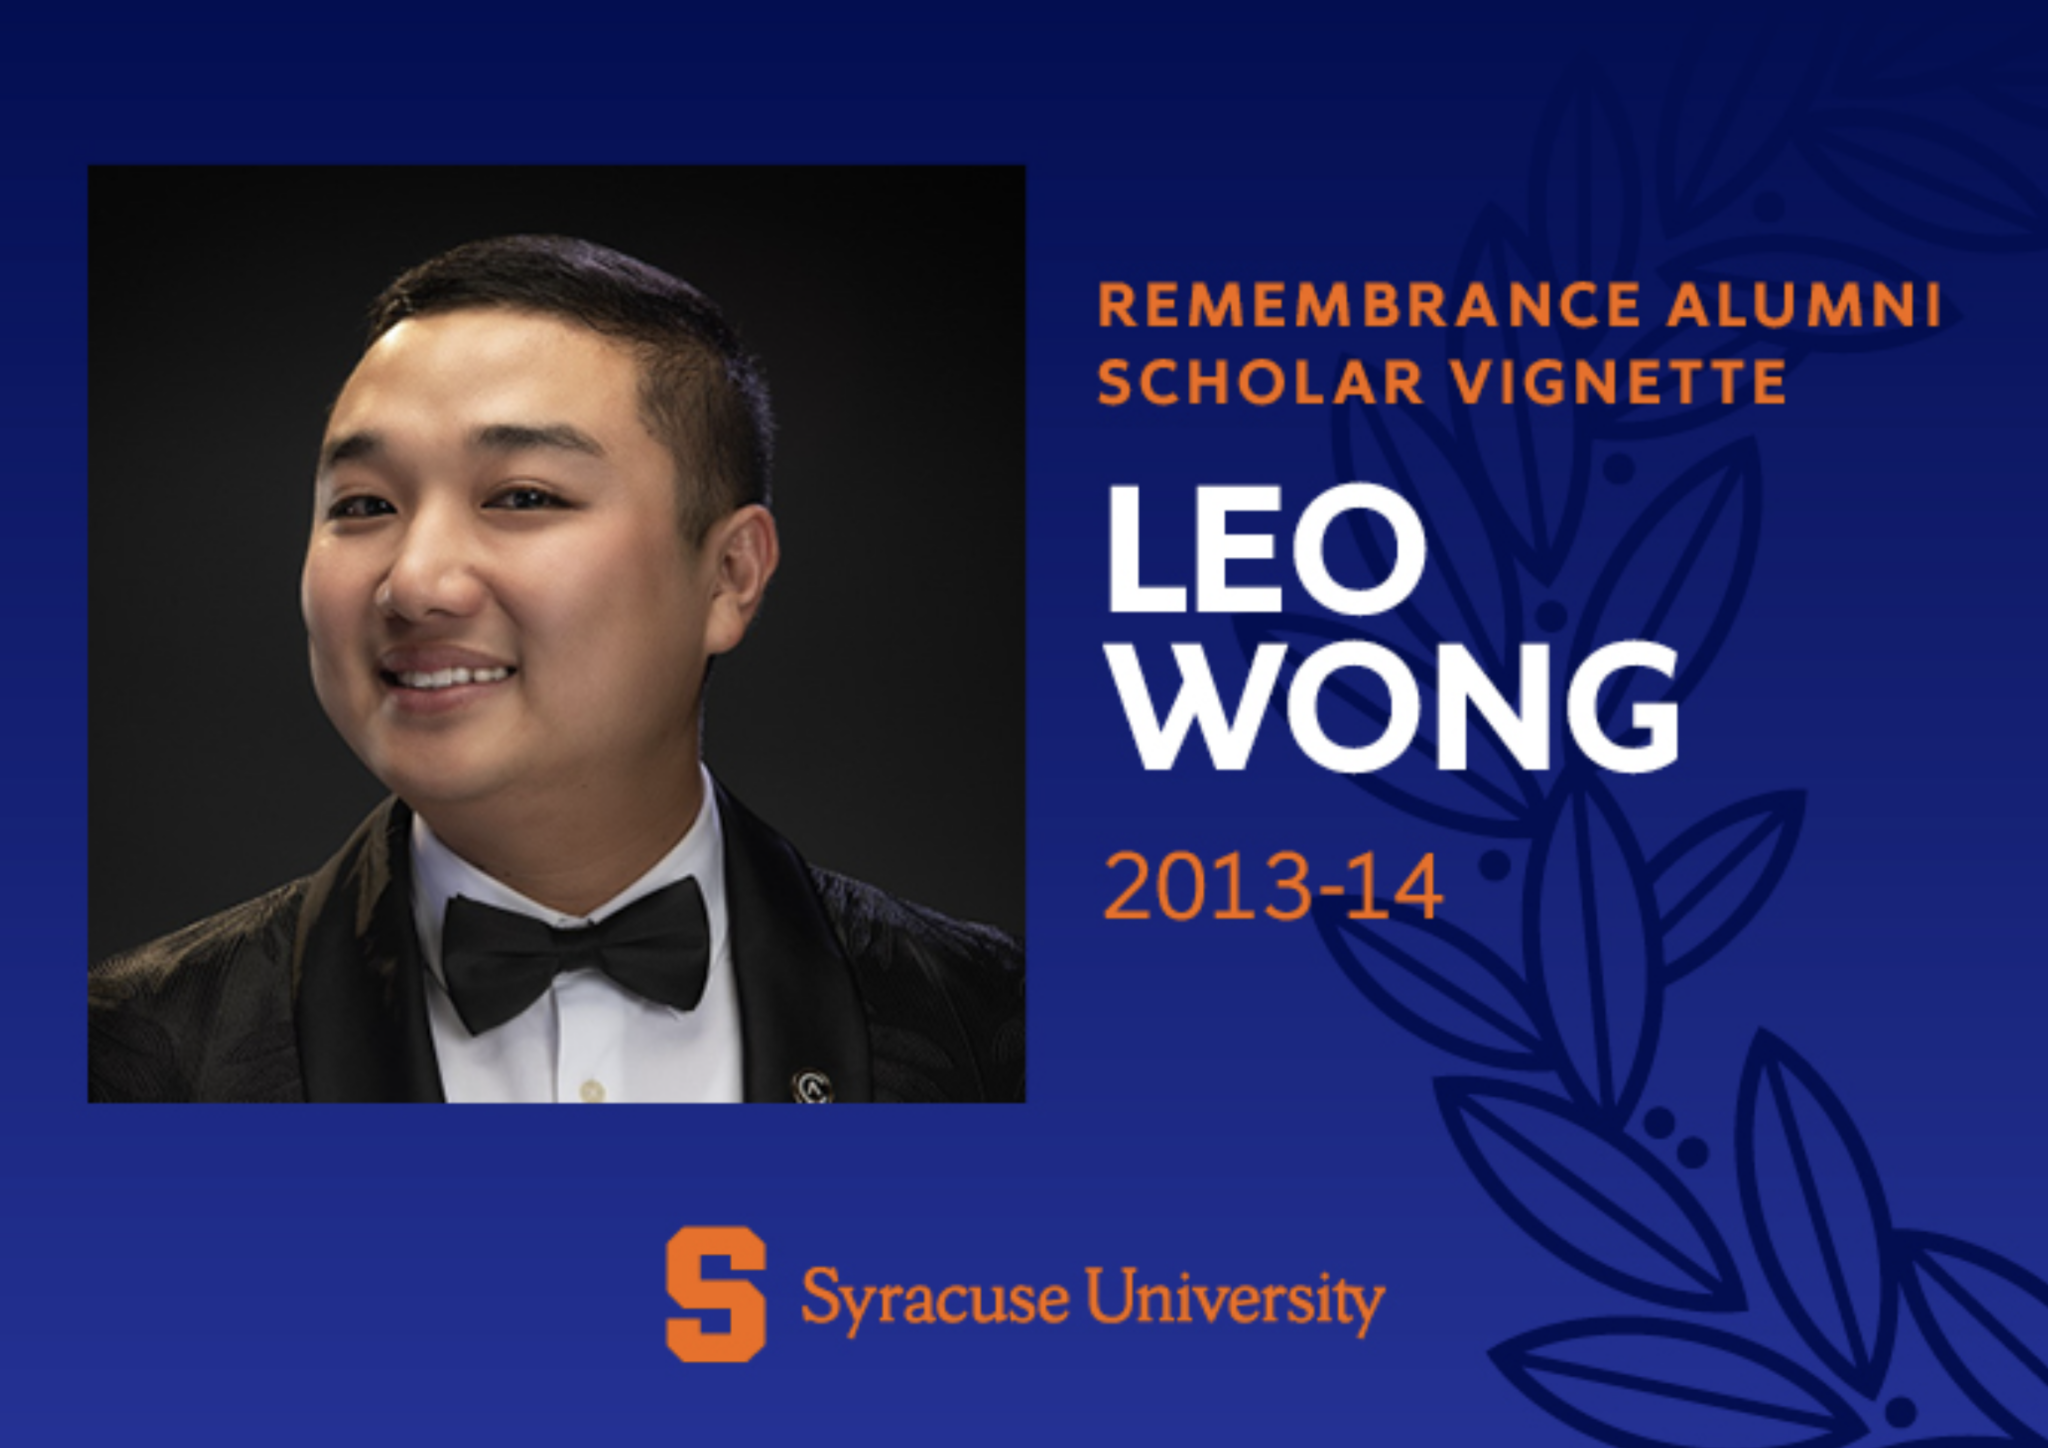 Leo Wong Remembrance Scholar vignette image